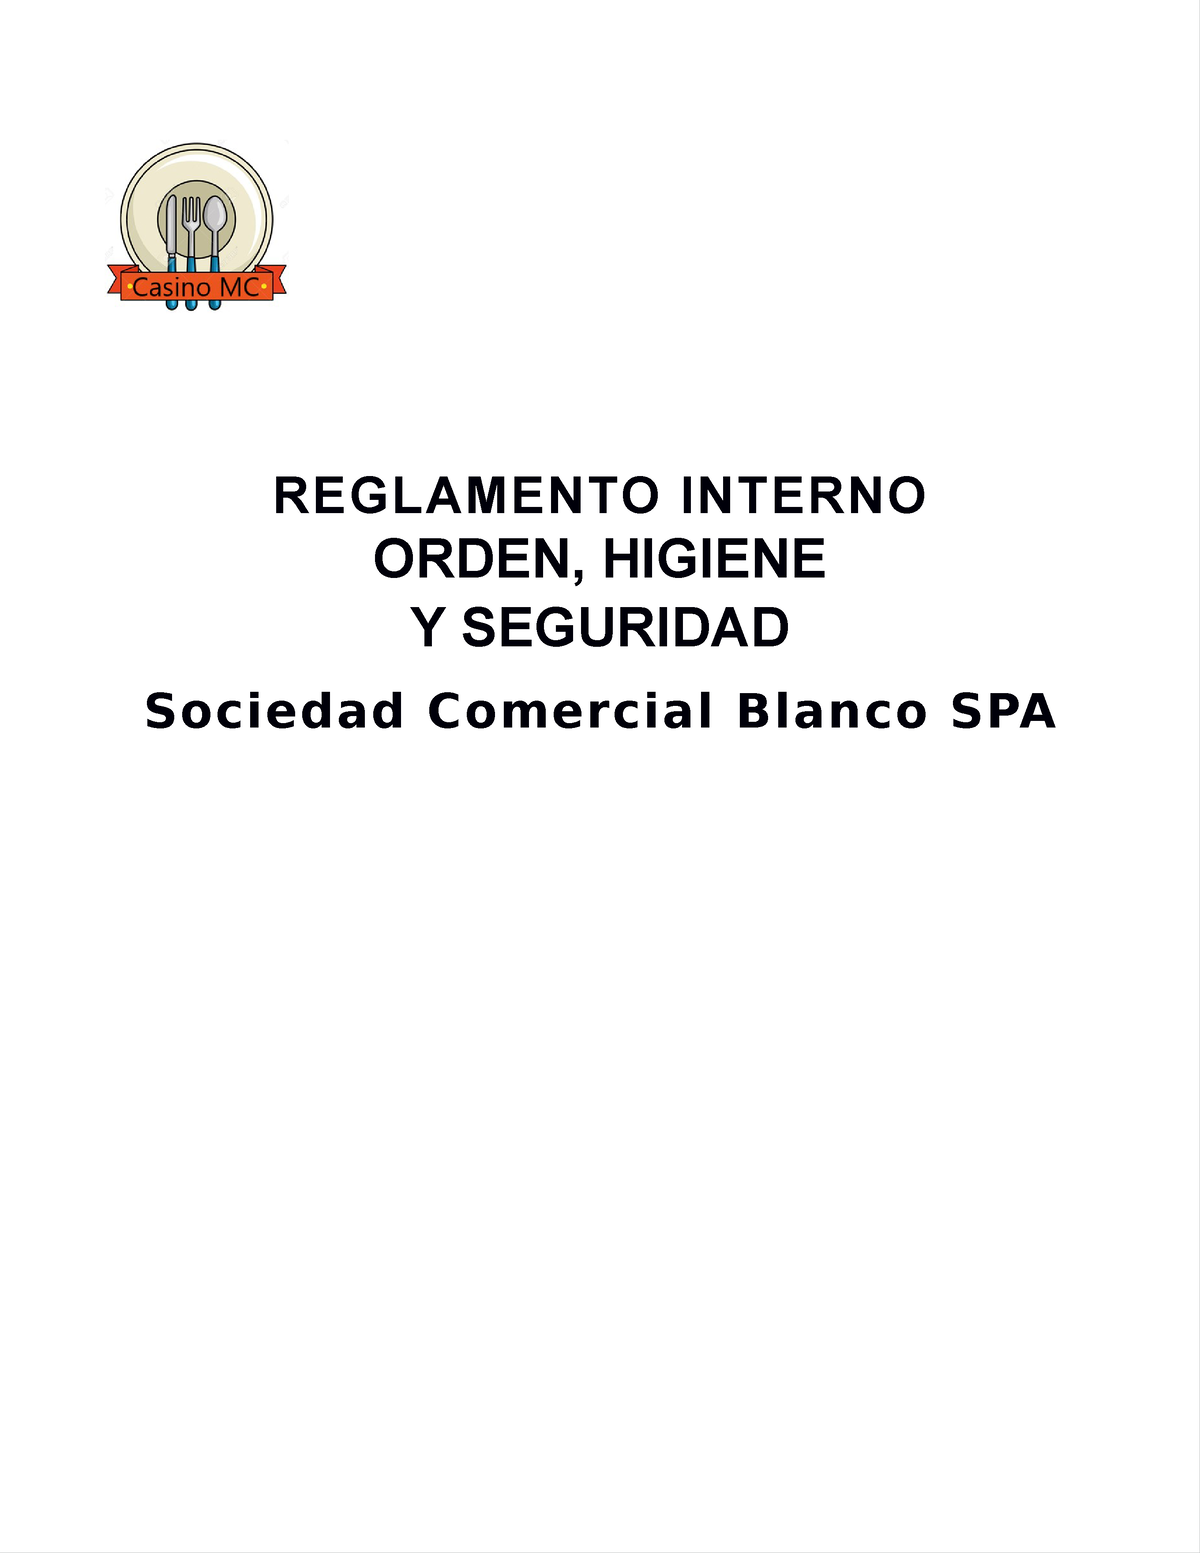 Reglamento De Orden Higiene Y Seguridad Reglamento Interno Orden Higiene Y Seguridad Sociedad 2454